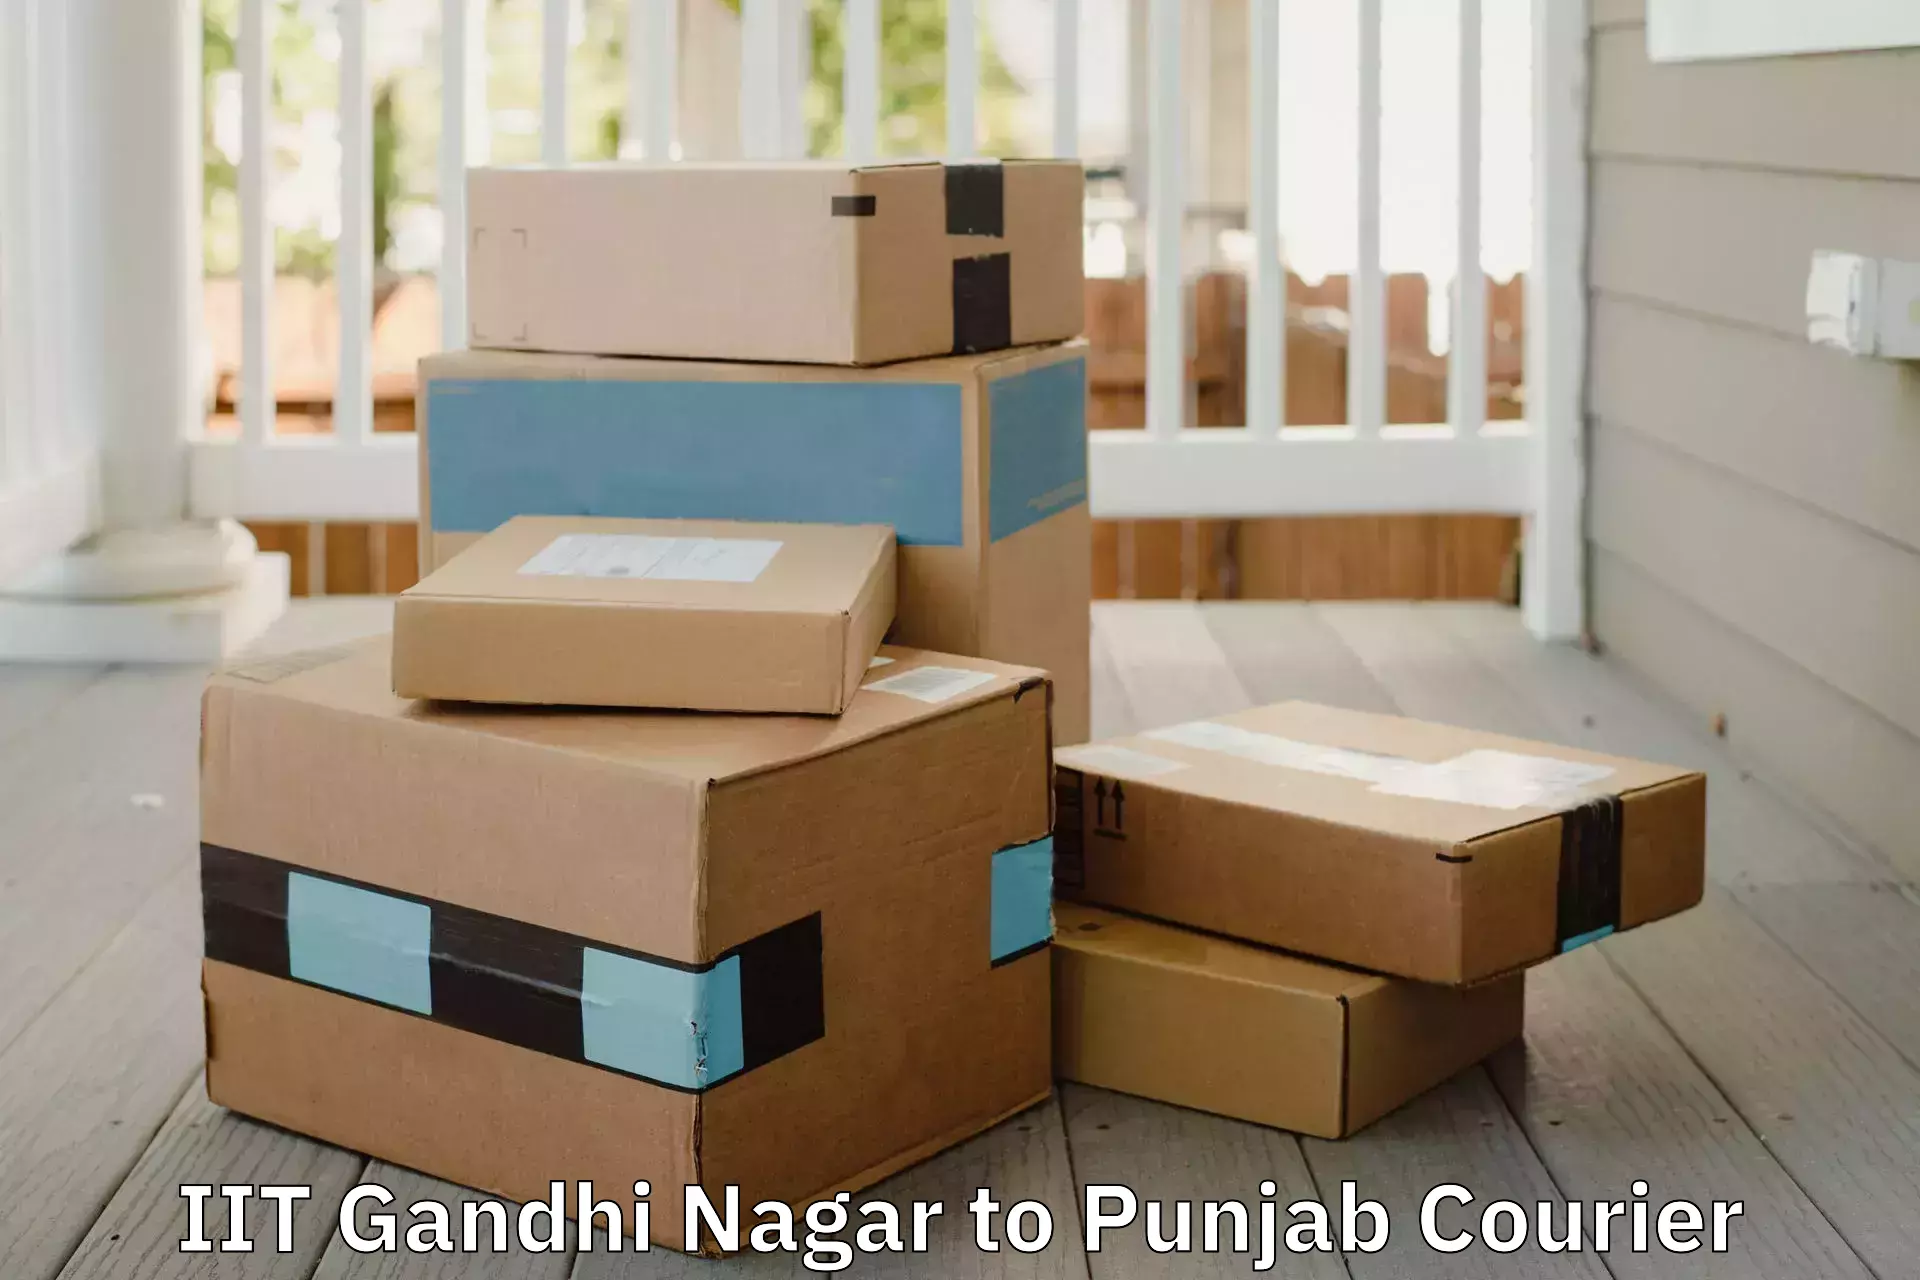 Efficient home movers IIT Gandhi Nagar to Sirhind Fatehgarh